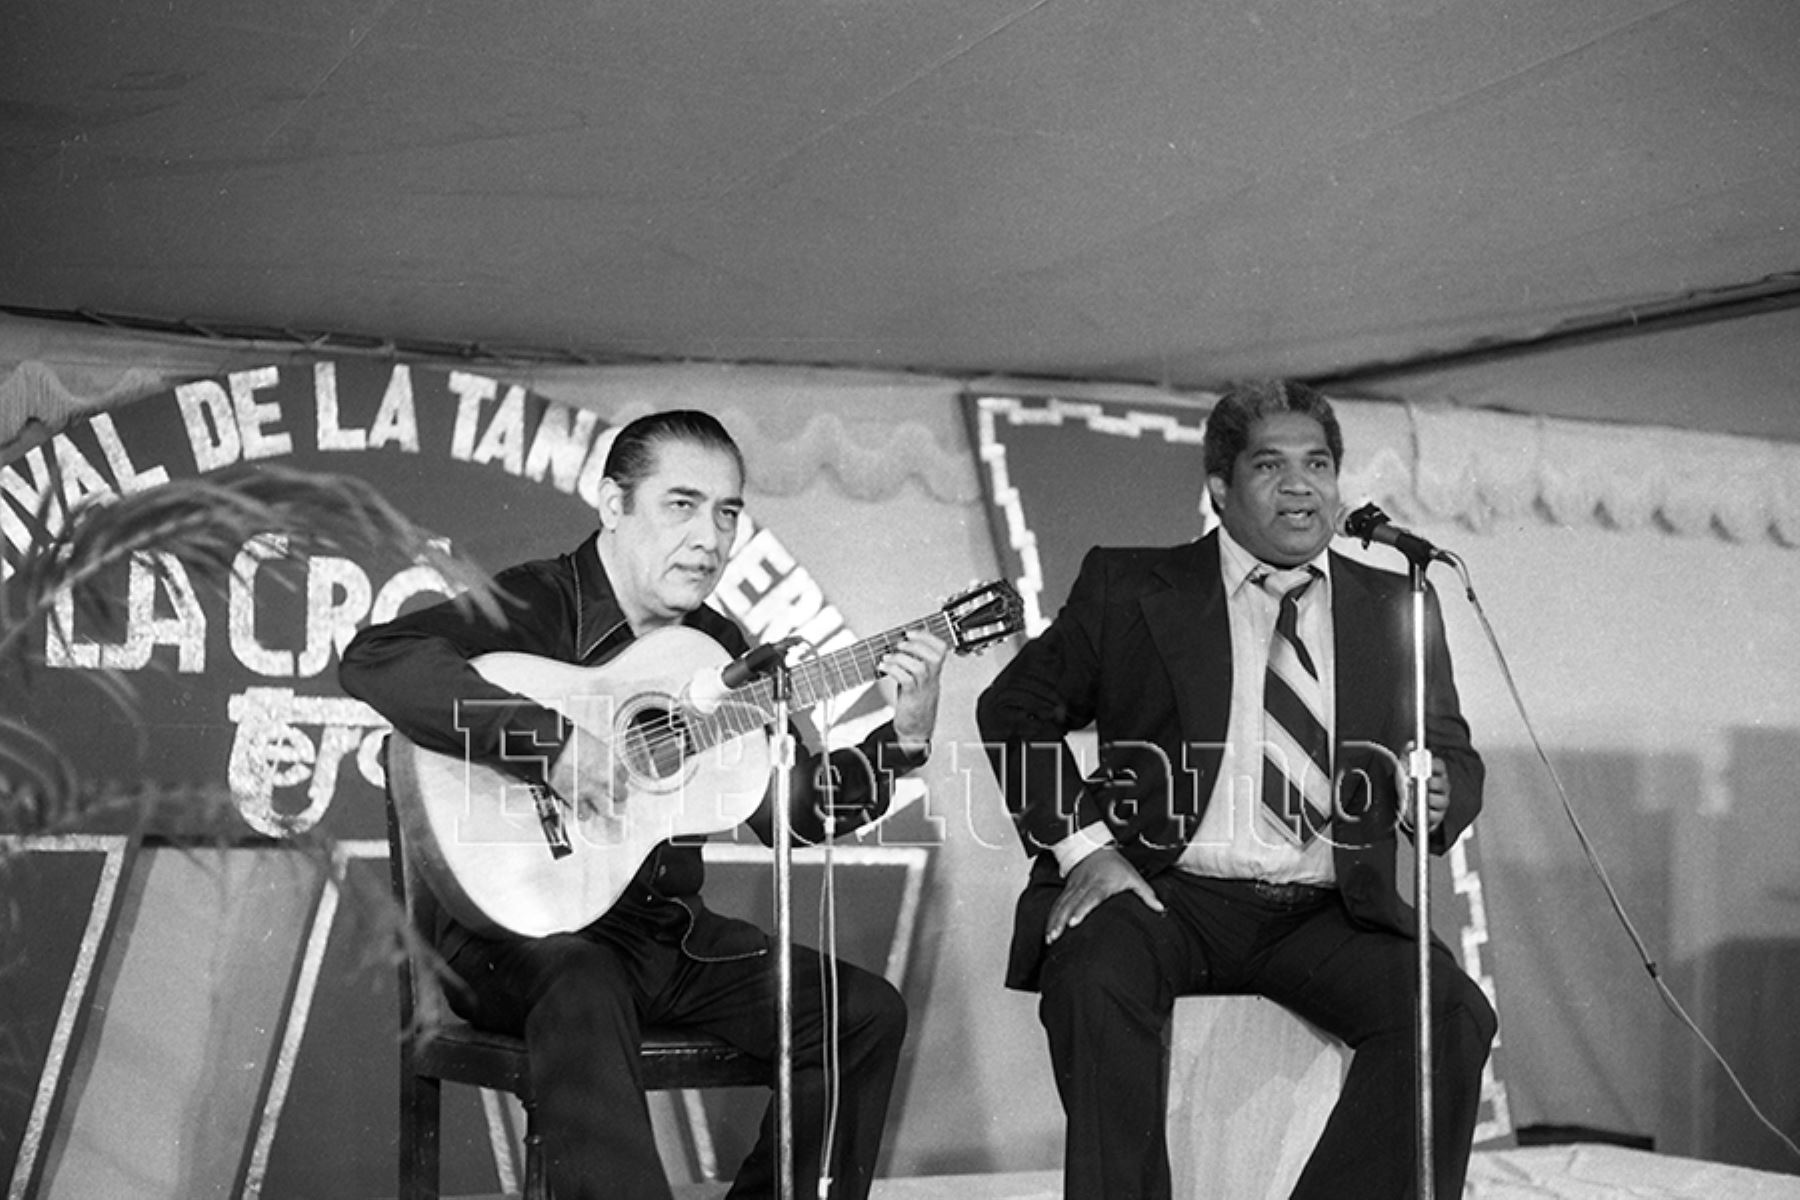 Lima - 27 abril 1979 / Oscar Avilés y Arturo "Zambo" Cavero en el Festival de la Tanga auspiciado por La Crónica. Foto: Archivo Histórico de EL PERUANO /